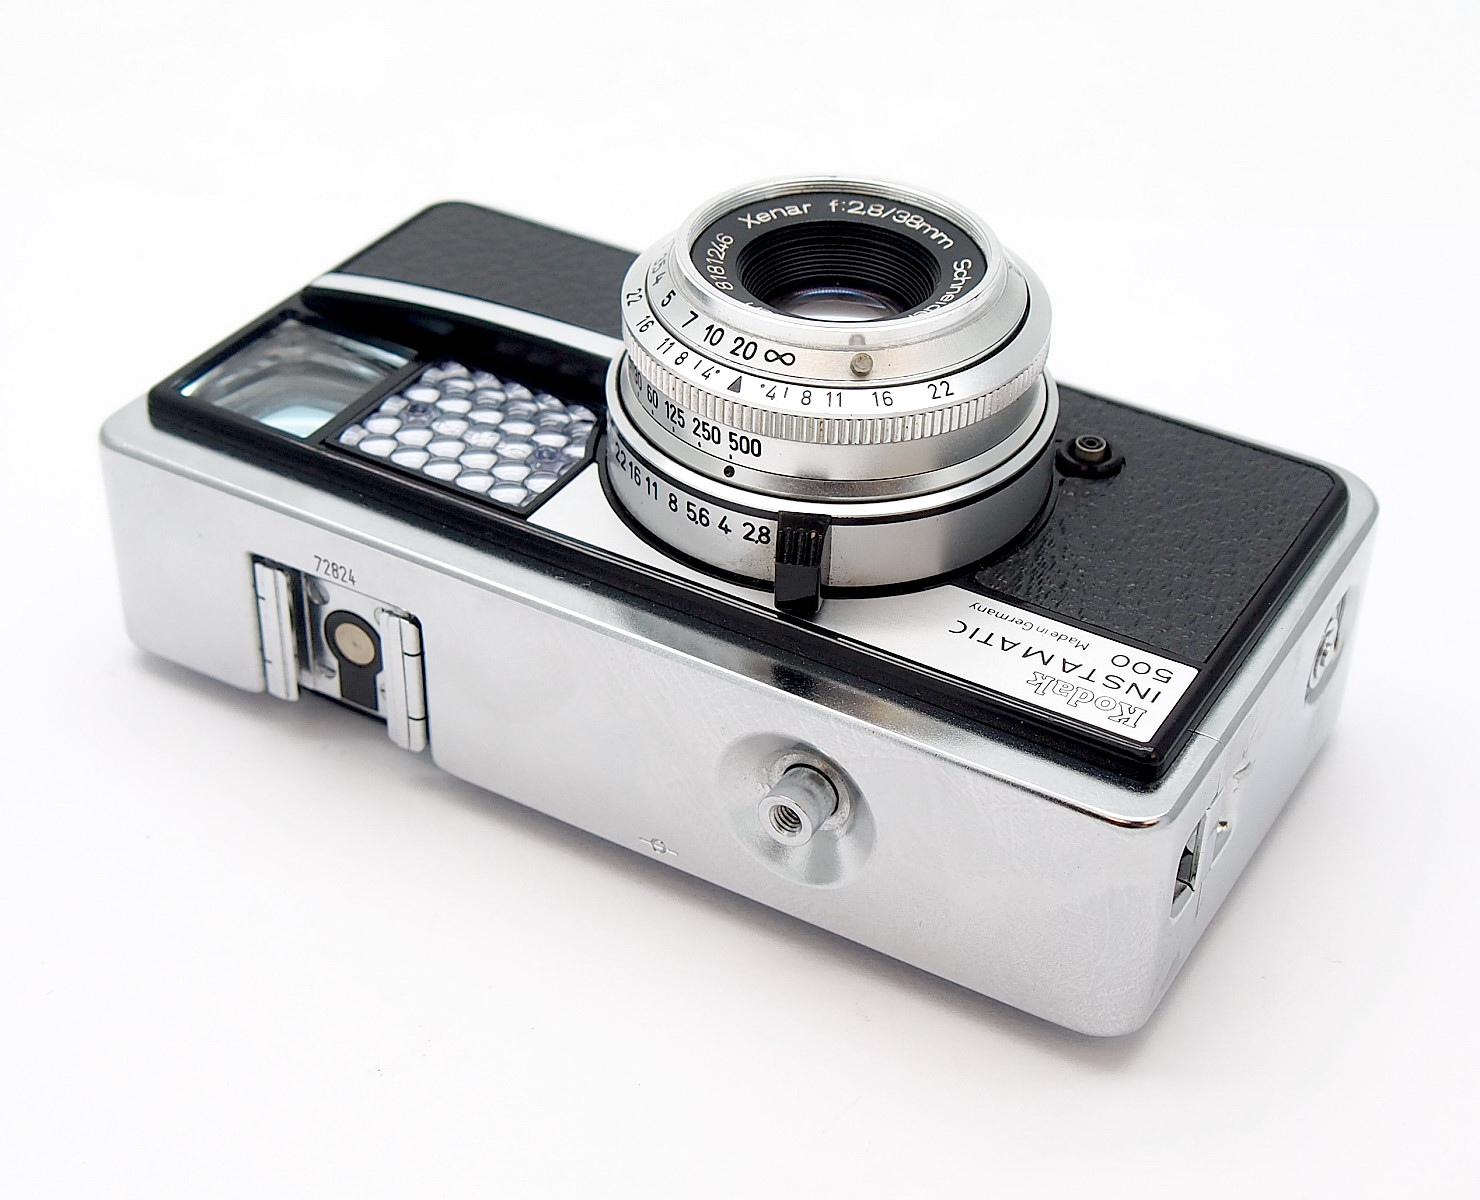 Kodak Instamatic 500 126 Camera with Xenar Lens #8815